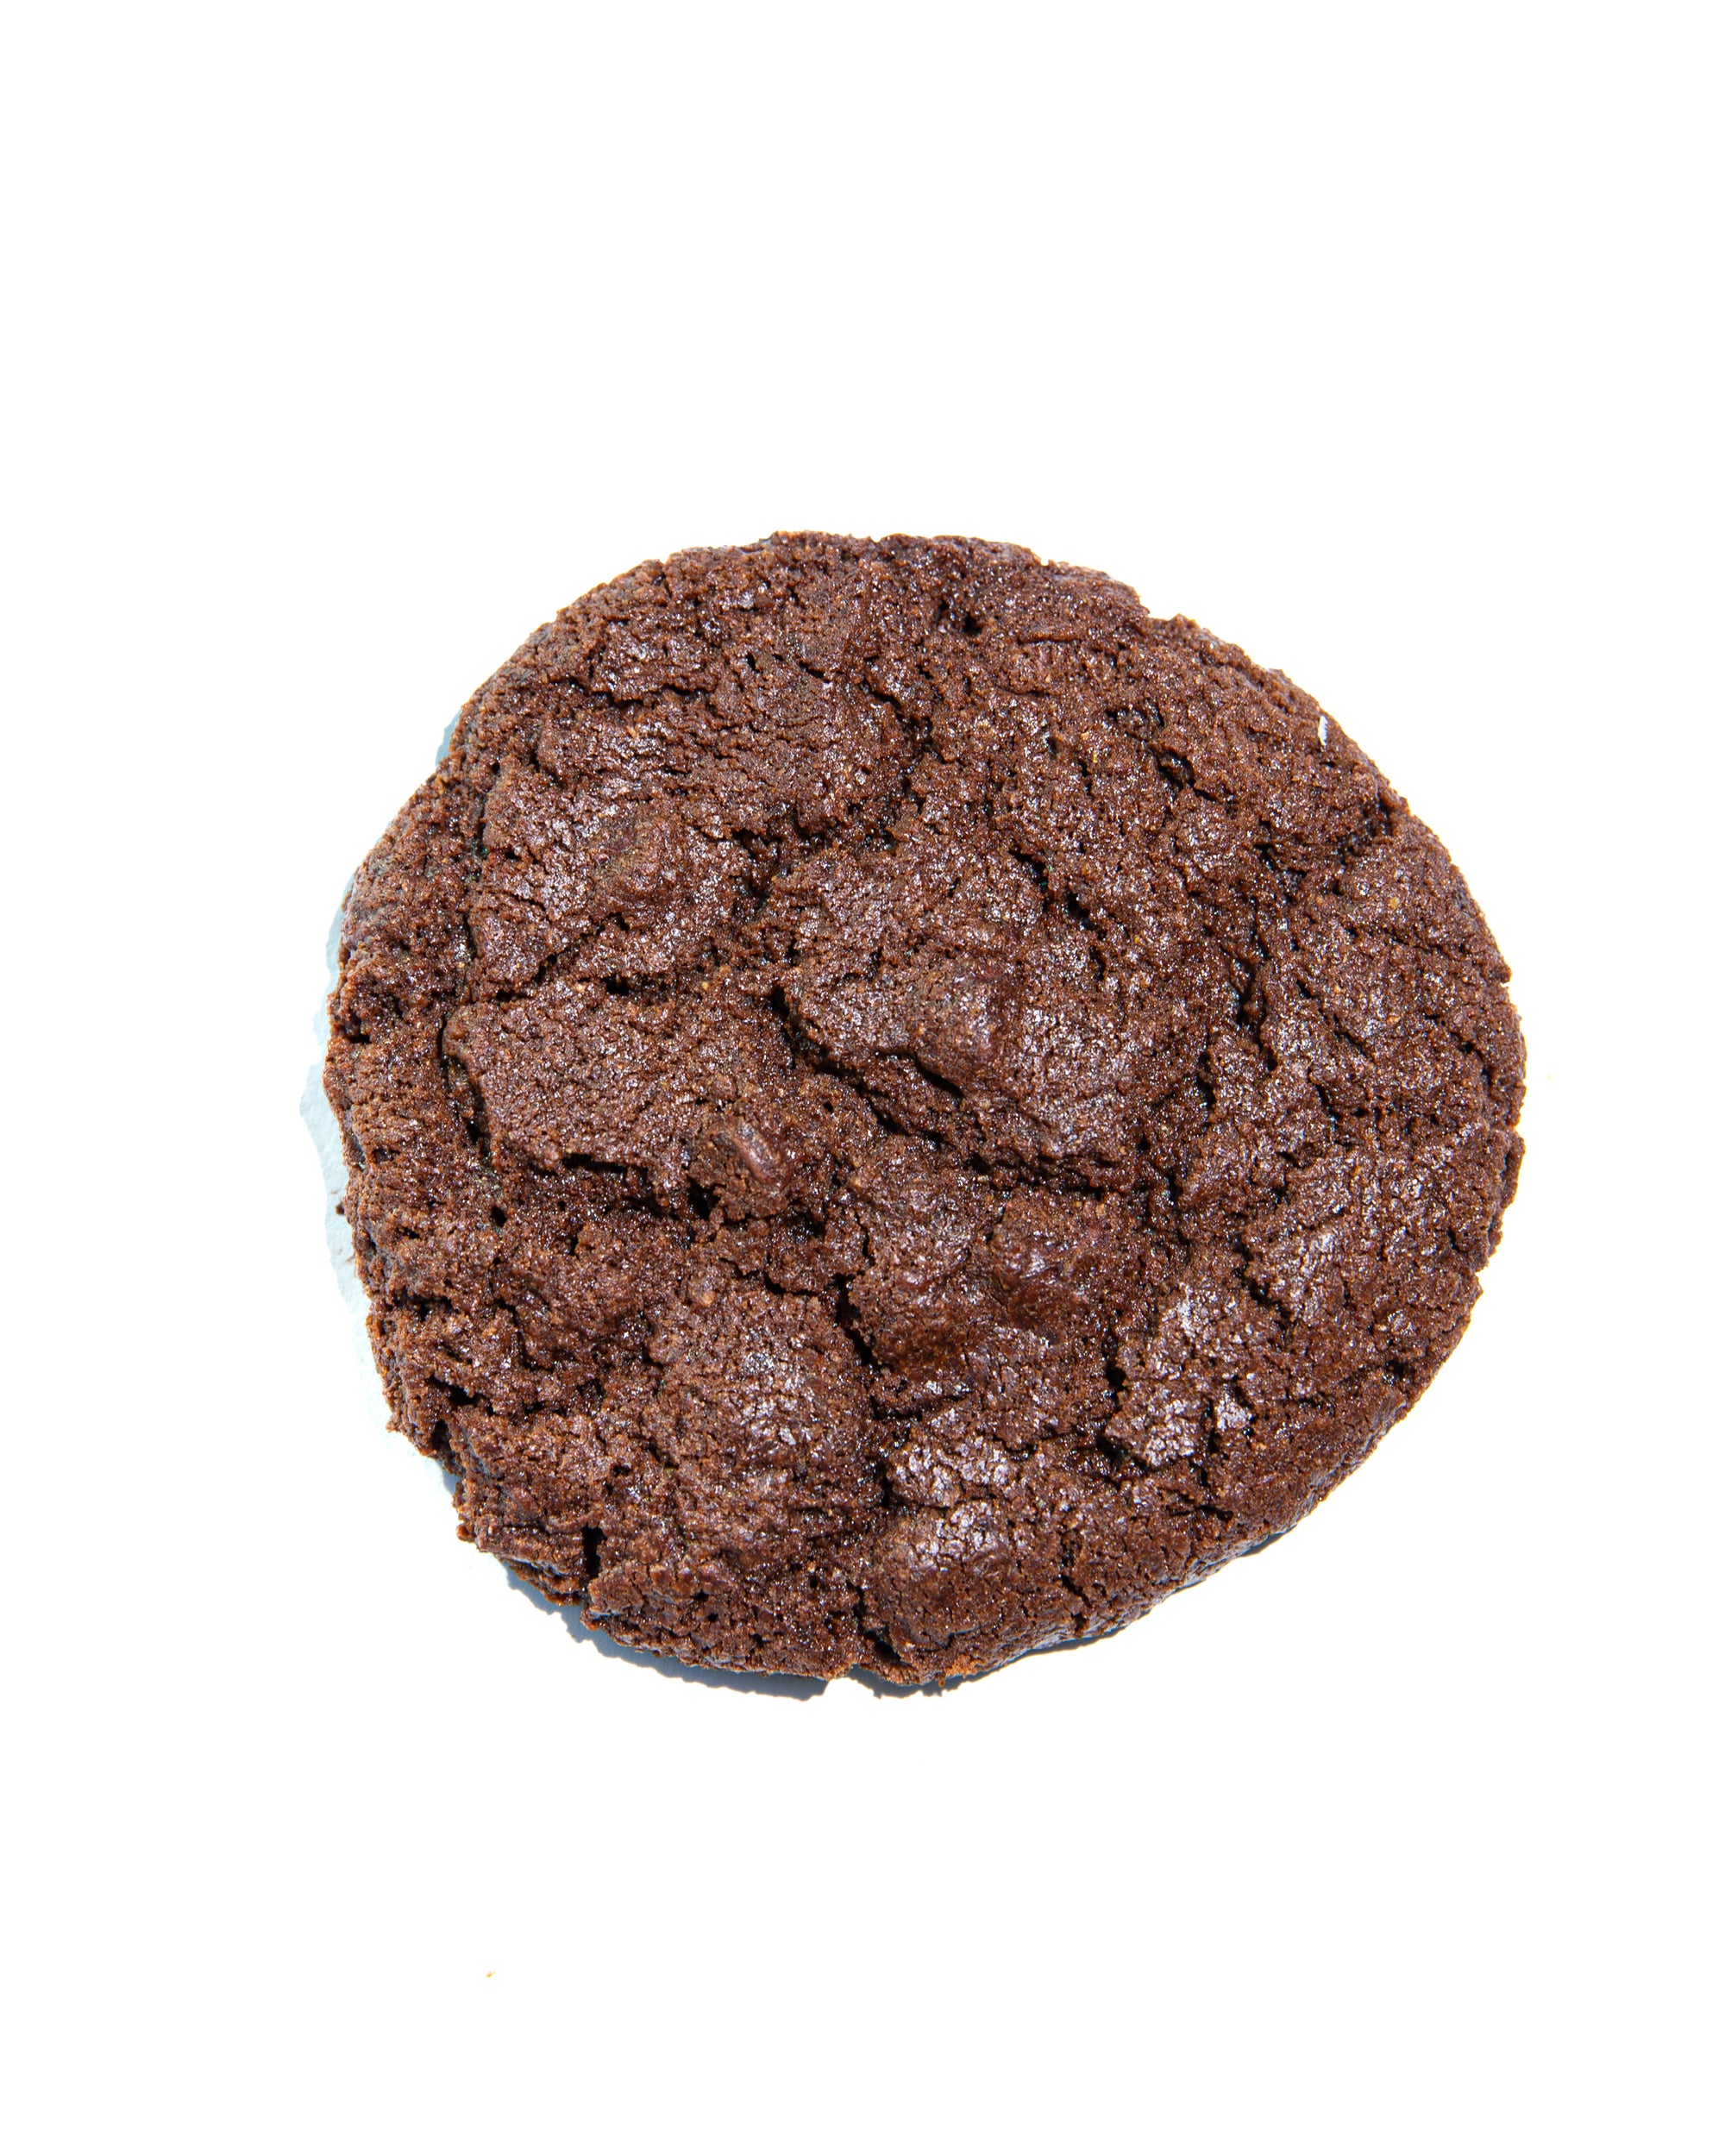 Bulk Cookies